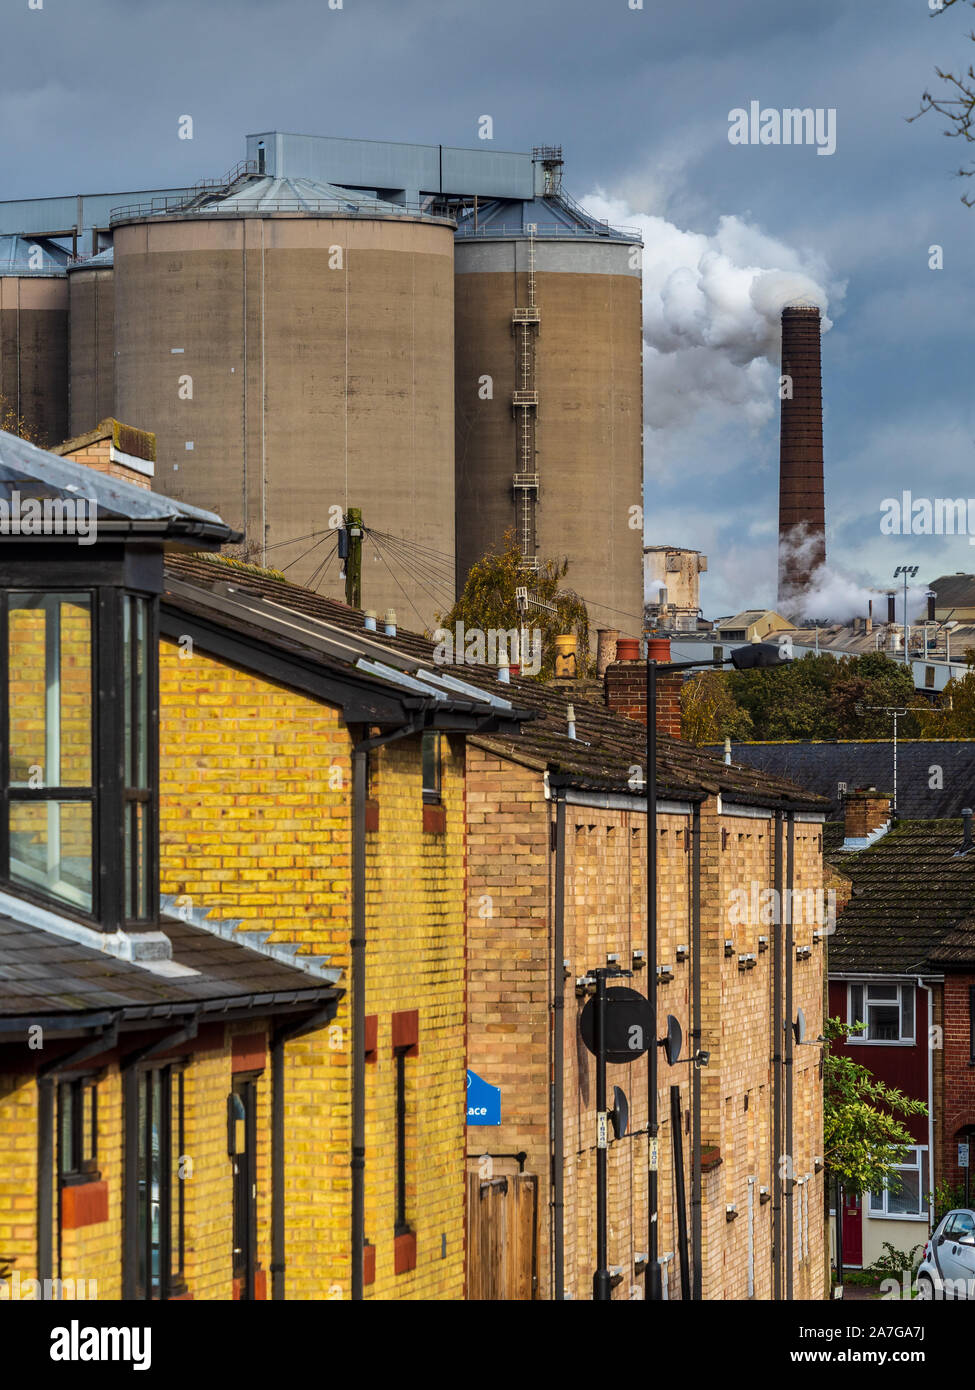 L'usine de betterave à sucre au Royaume-Uni - Les cheminées - vapeur s'élève de la British Sugar Factory à Bury St Edmunds Suffolk UK Banque D'Images